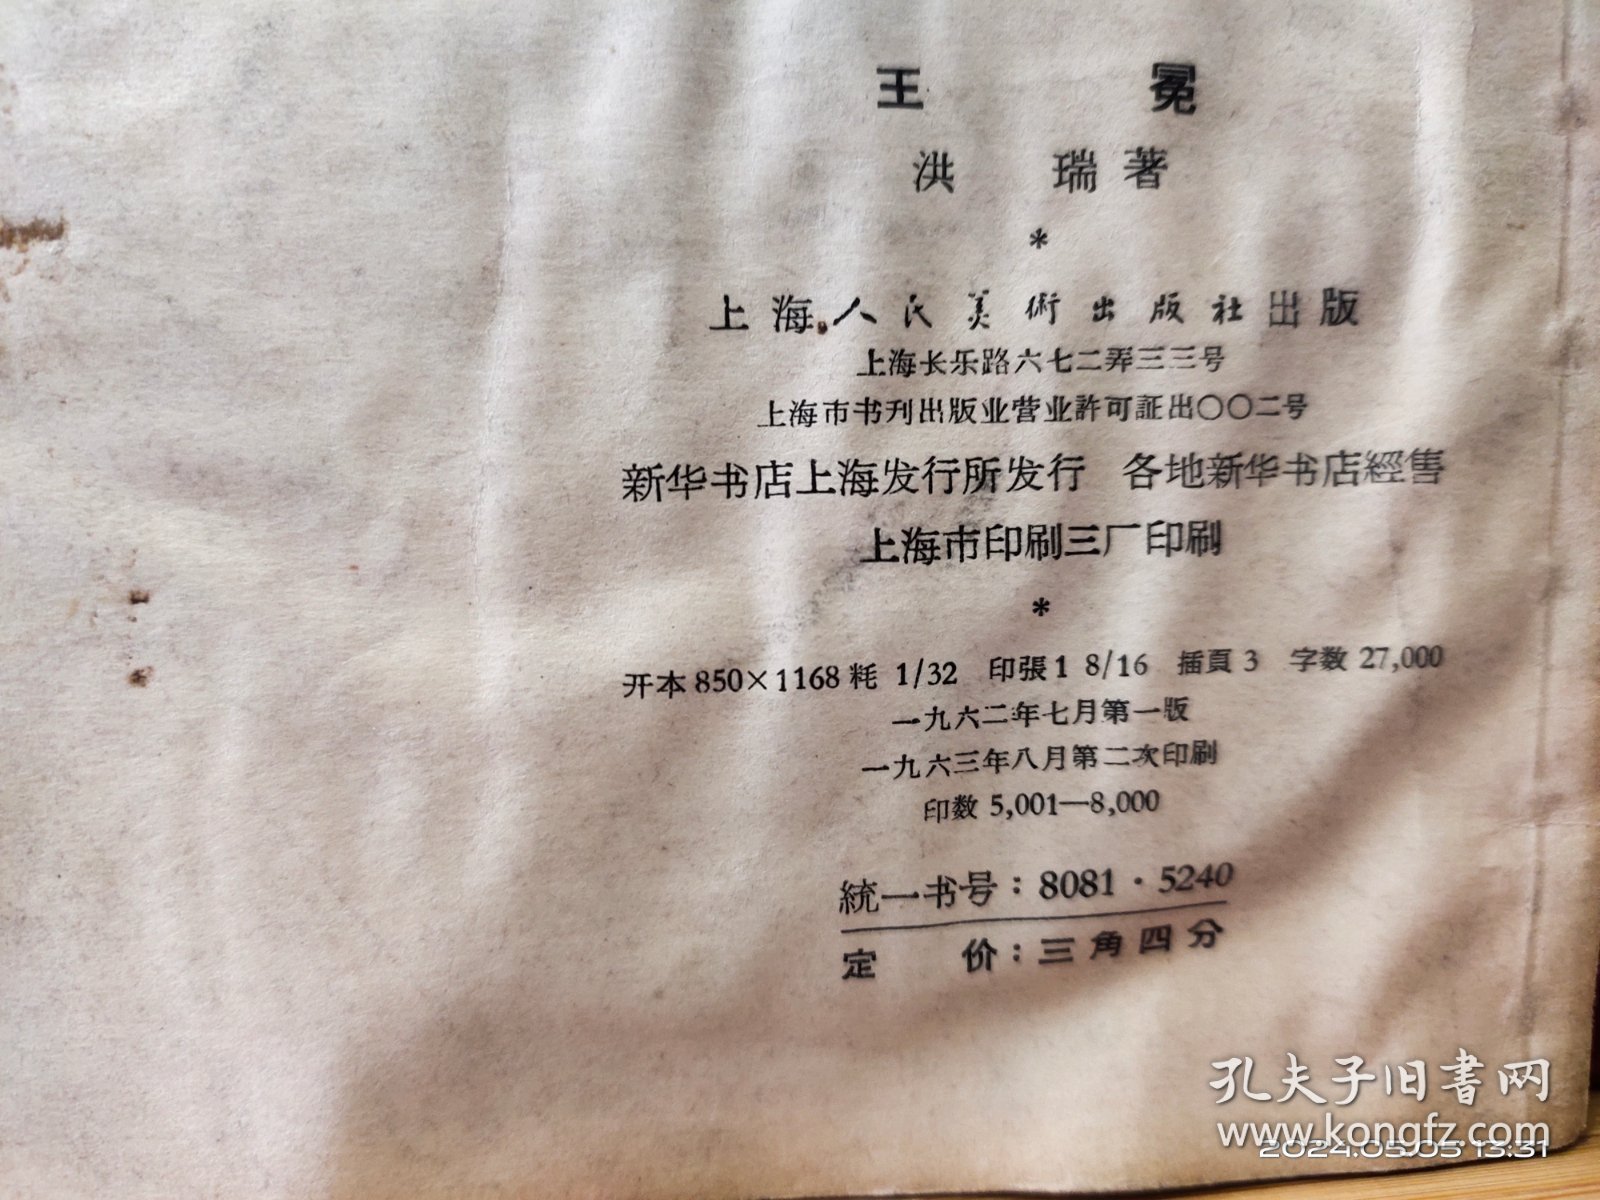 D3469   王冕  中国画家丛书  全一册   插图本     上海人民美术出版社  1962年8月  一版二印   仅印  8000 册